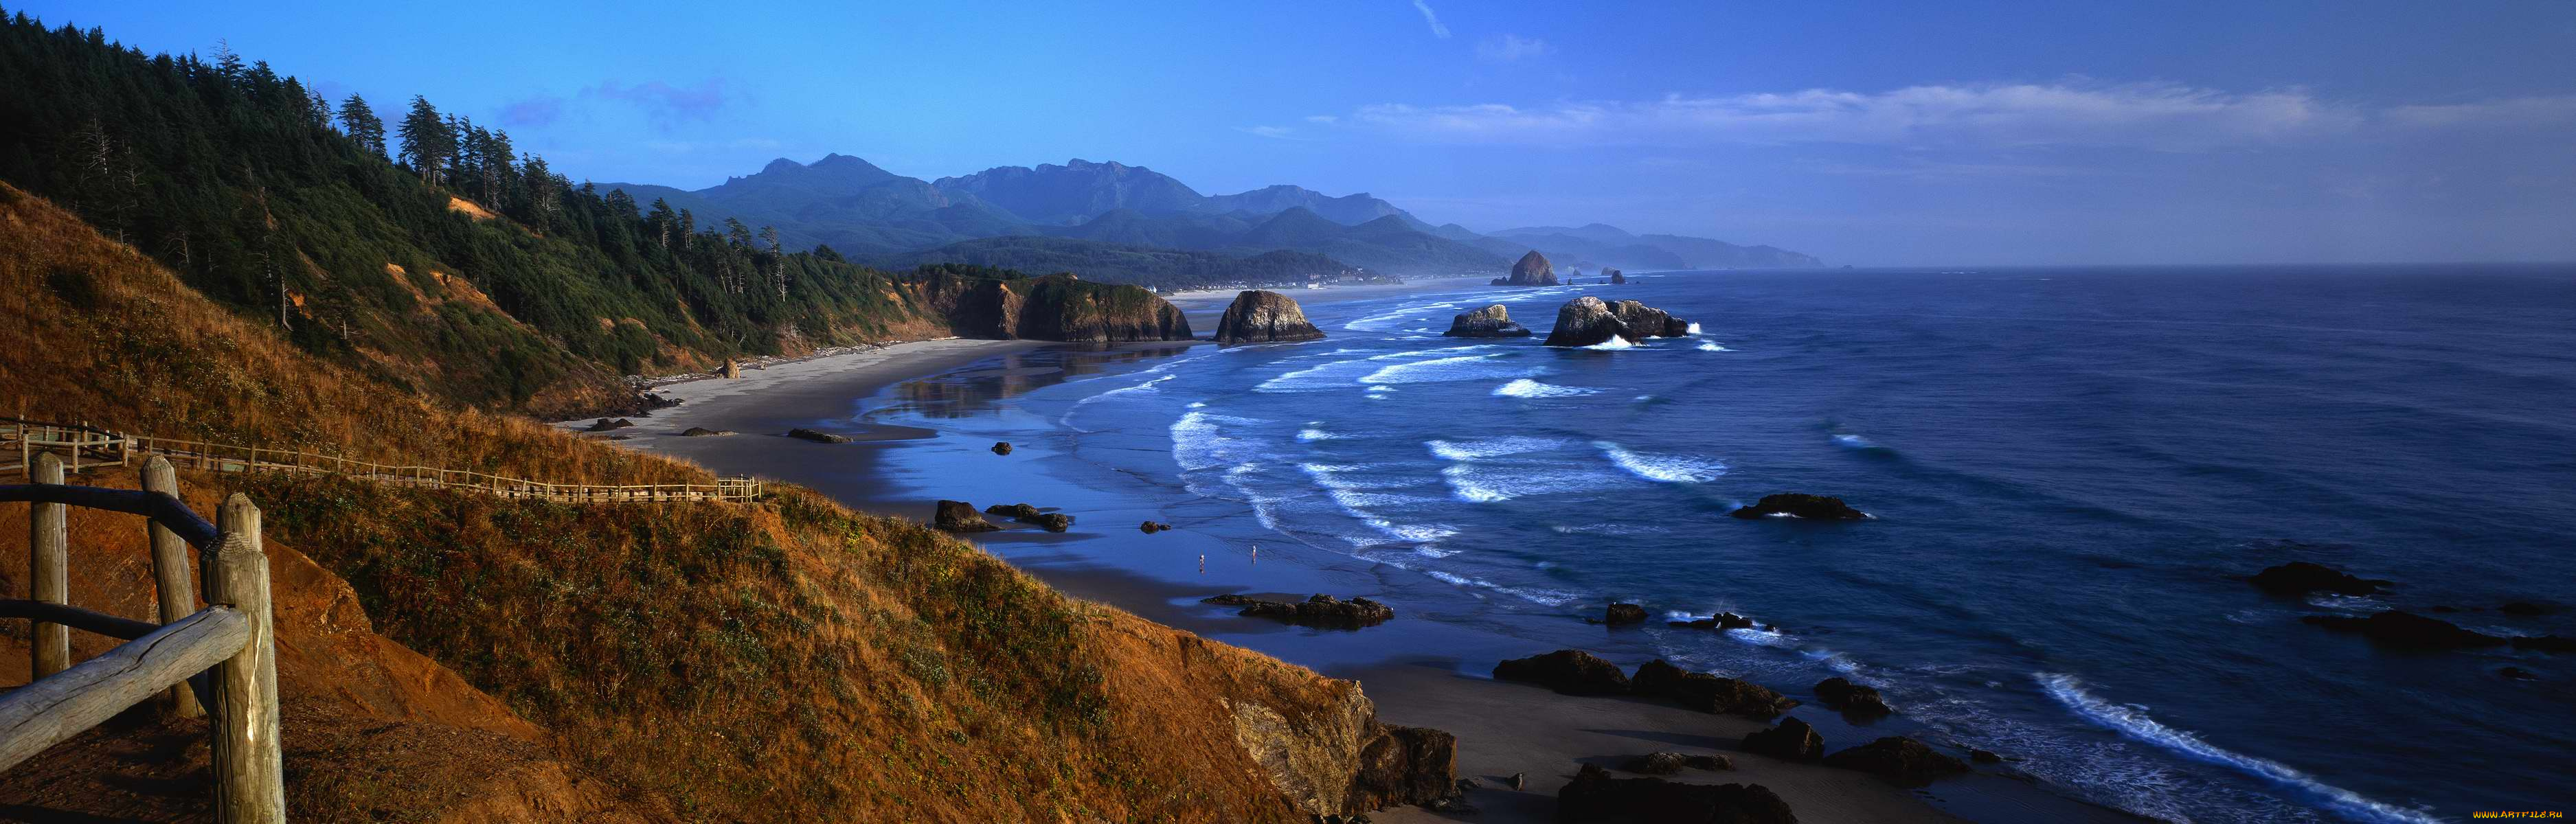 природа, побережье, океан, пляж, волны, камни, скалы, дорожка, панорама